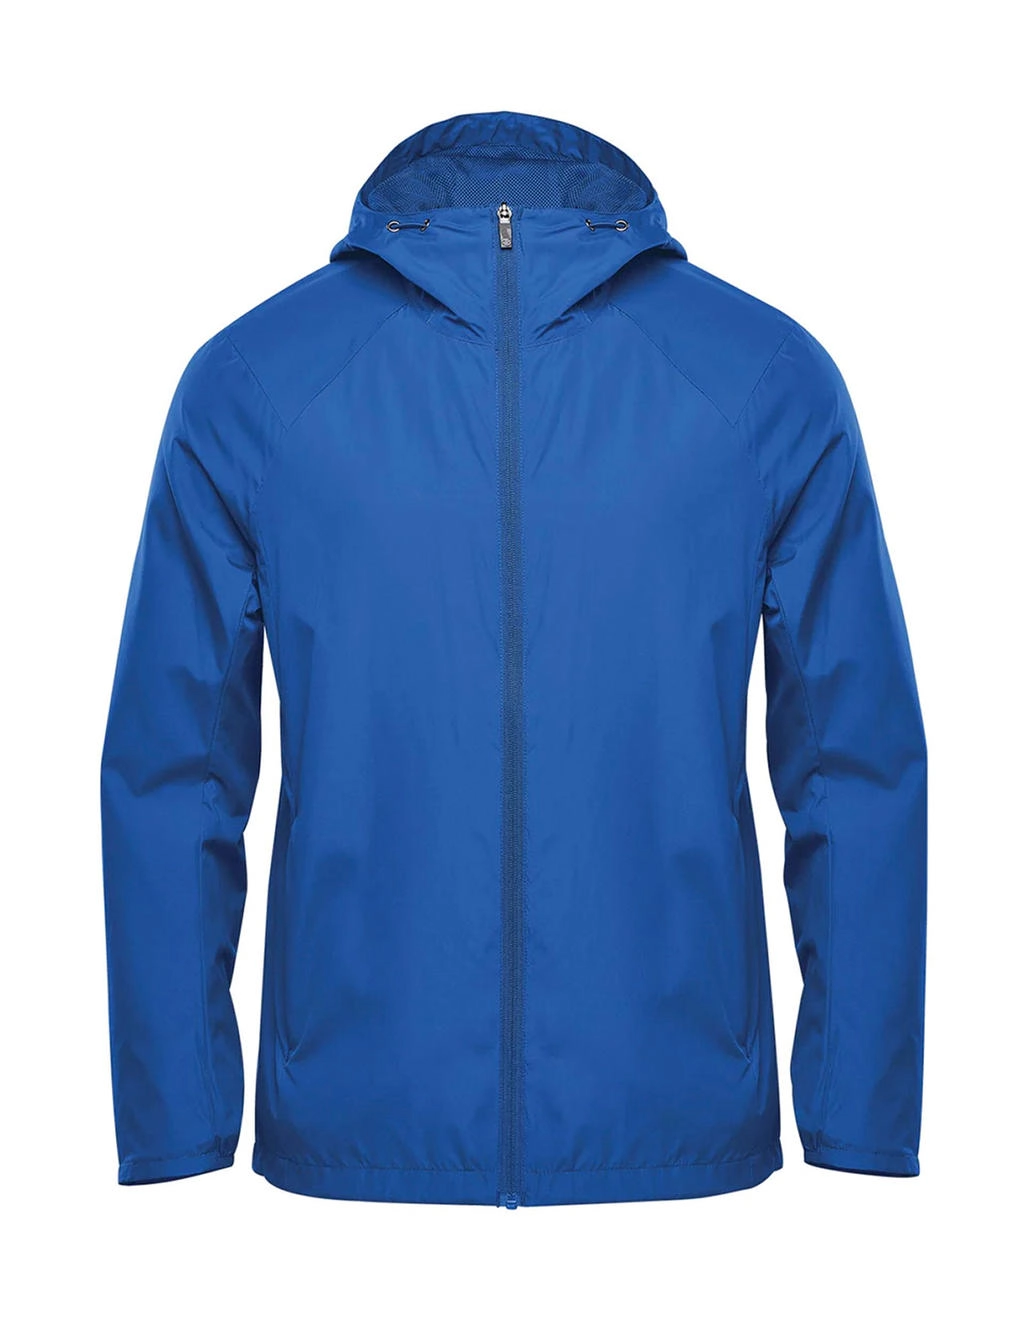 Men`s Wind Jacket zum Besticken und Bedrucken in der Farbe Classic Blue mit Ihren Logo, Schriftzug oder Motiv.